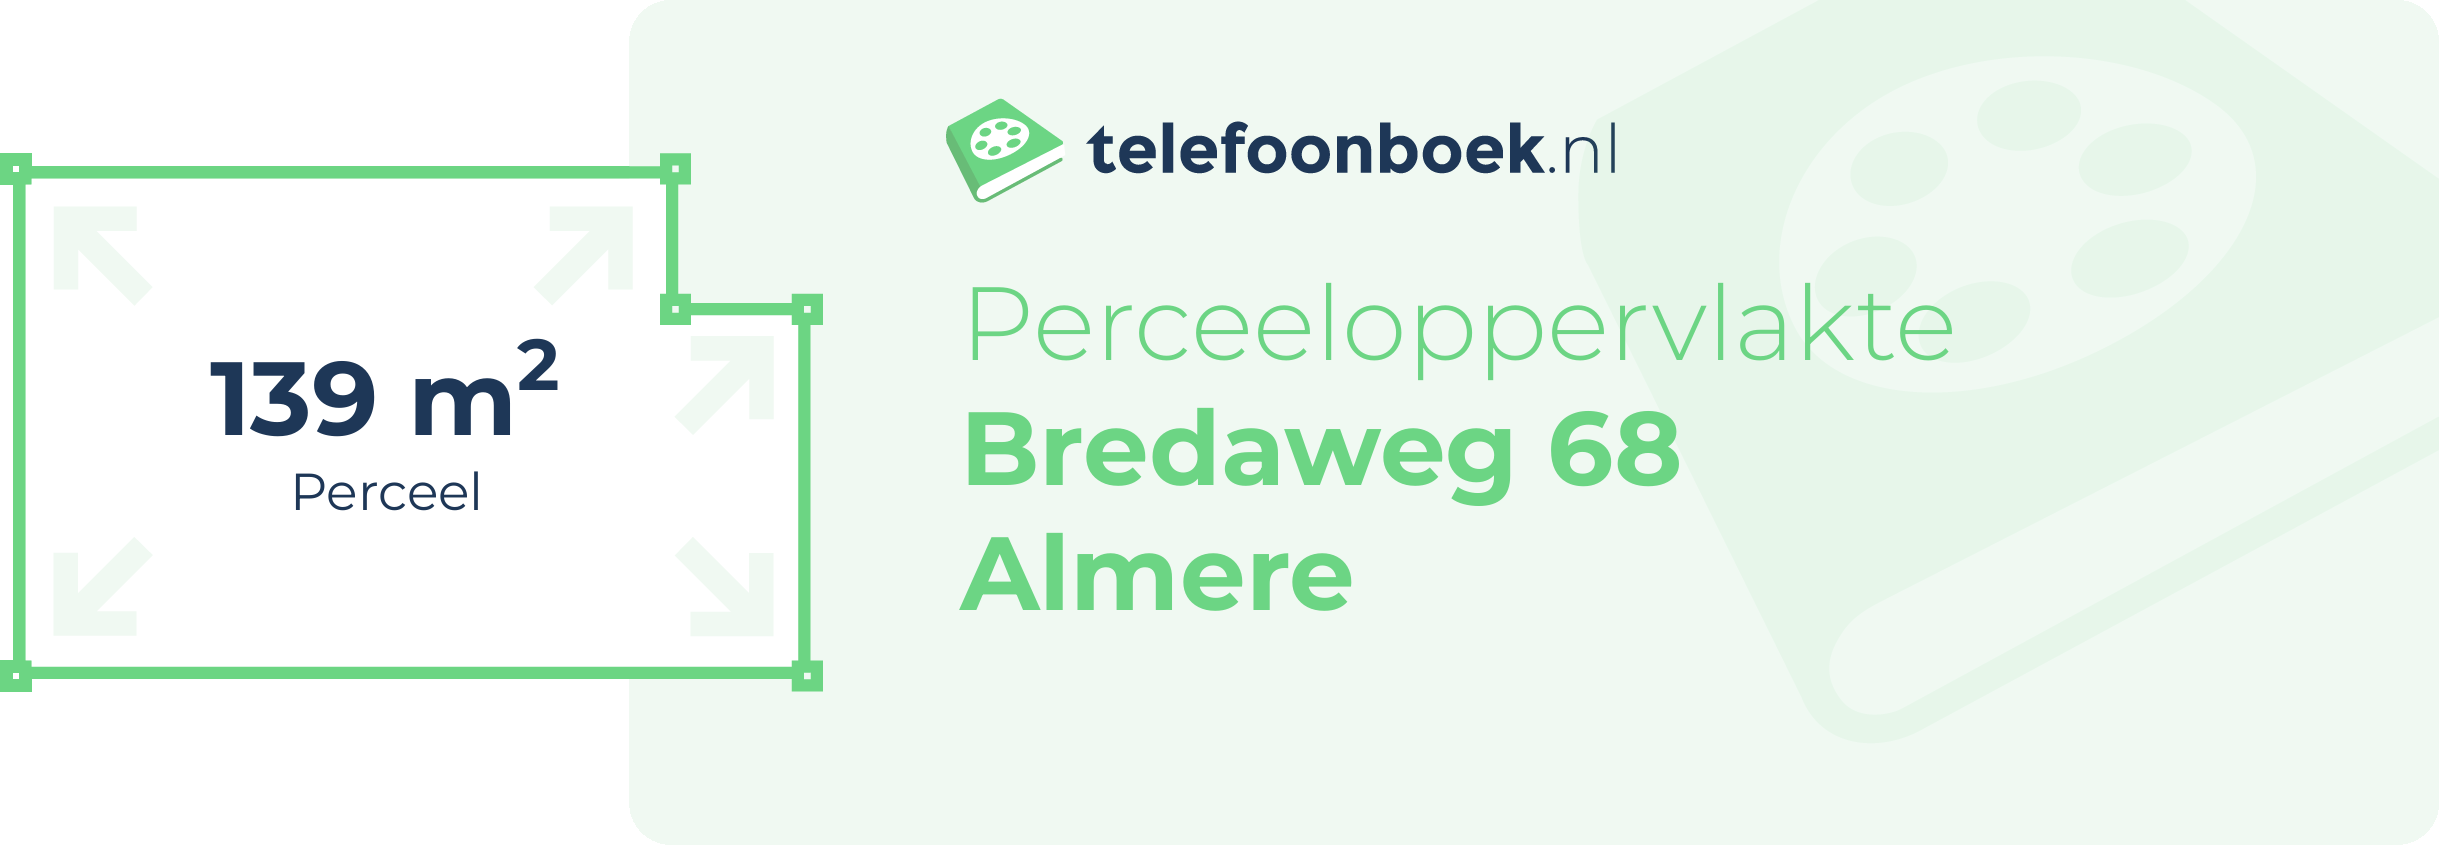 Perceeloppervlakte Bredaweg 68 Almere